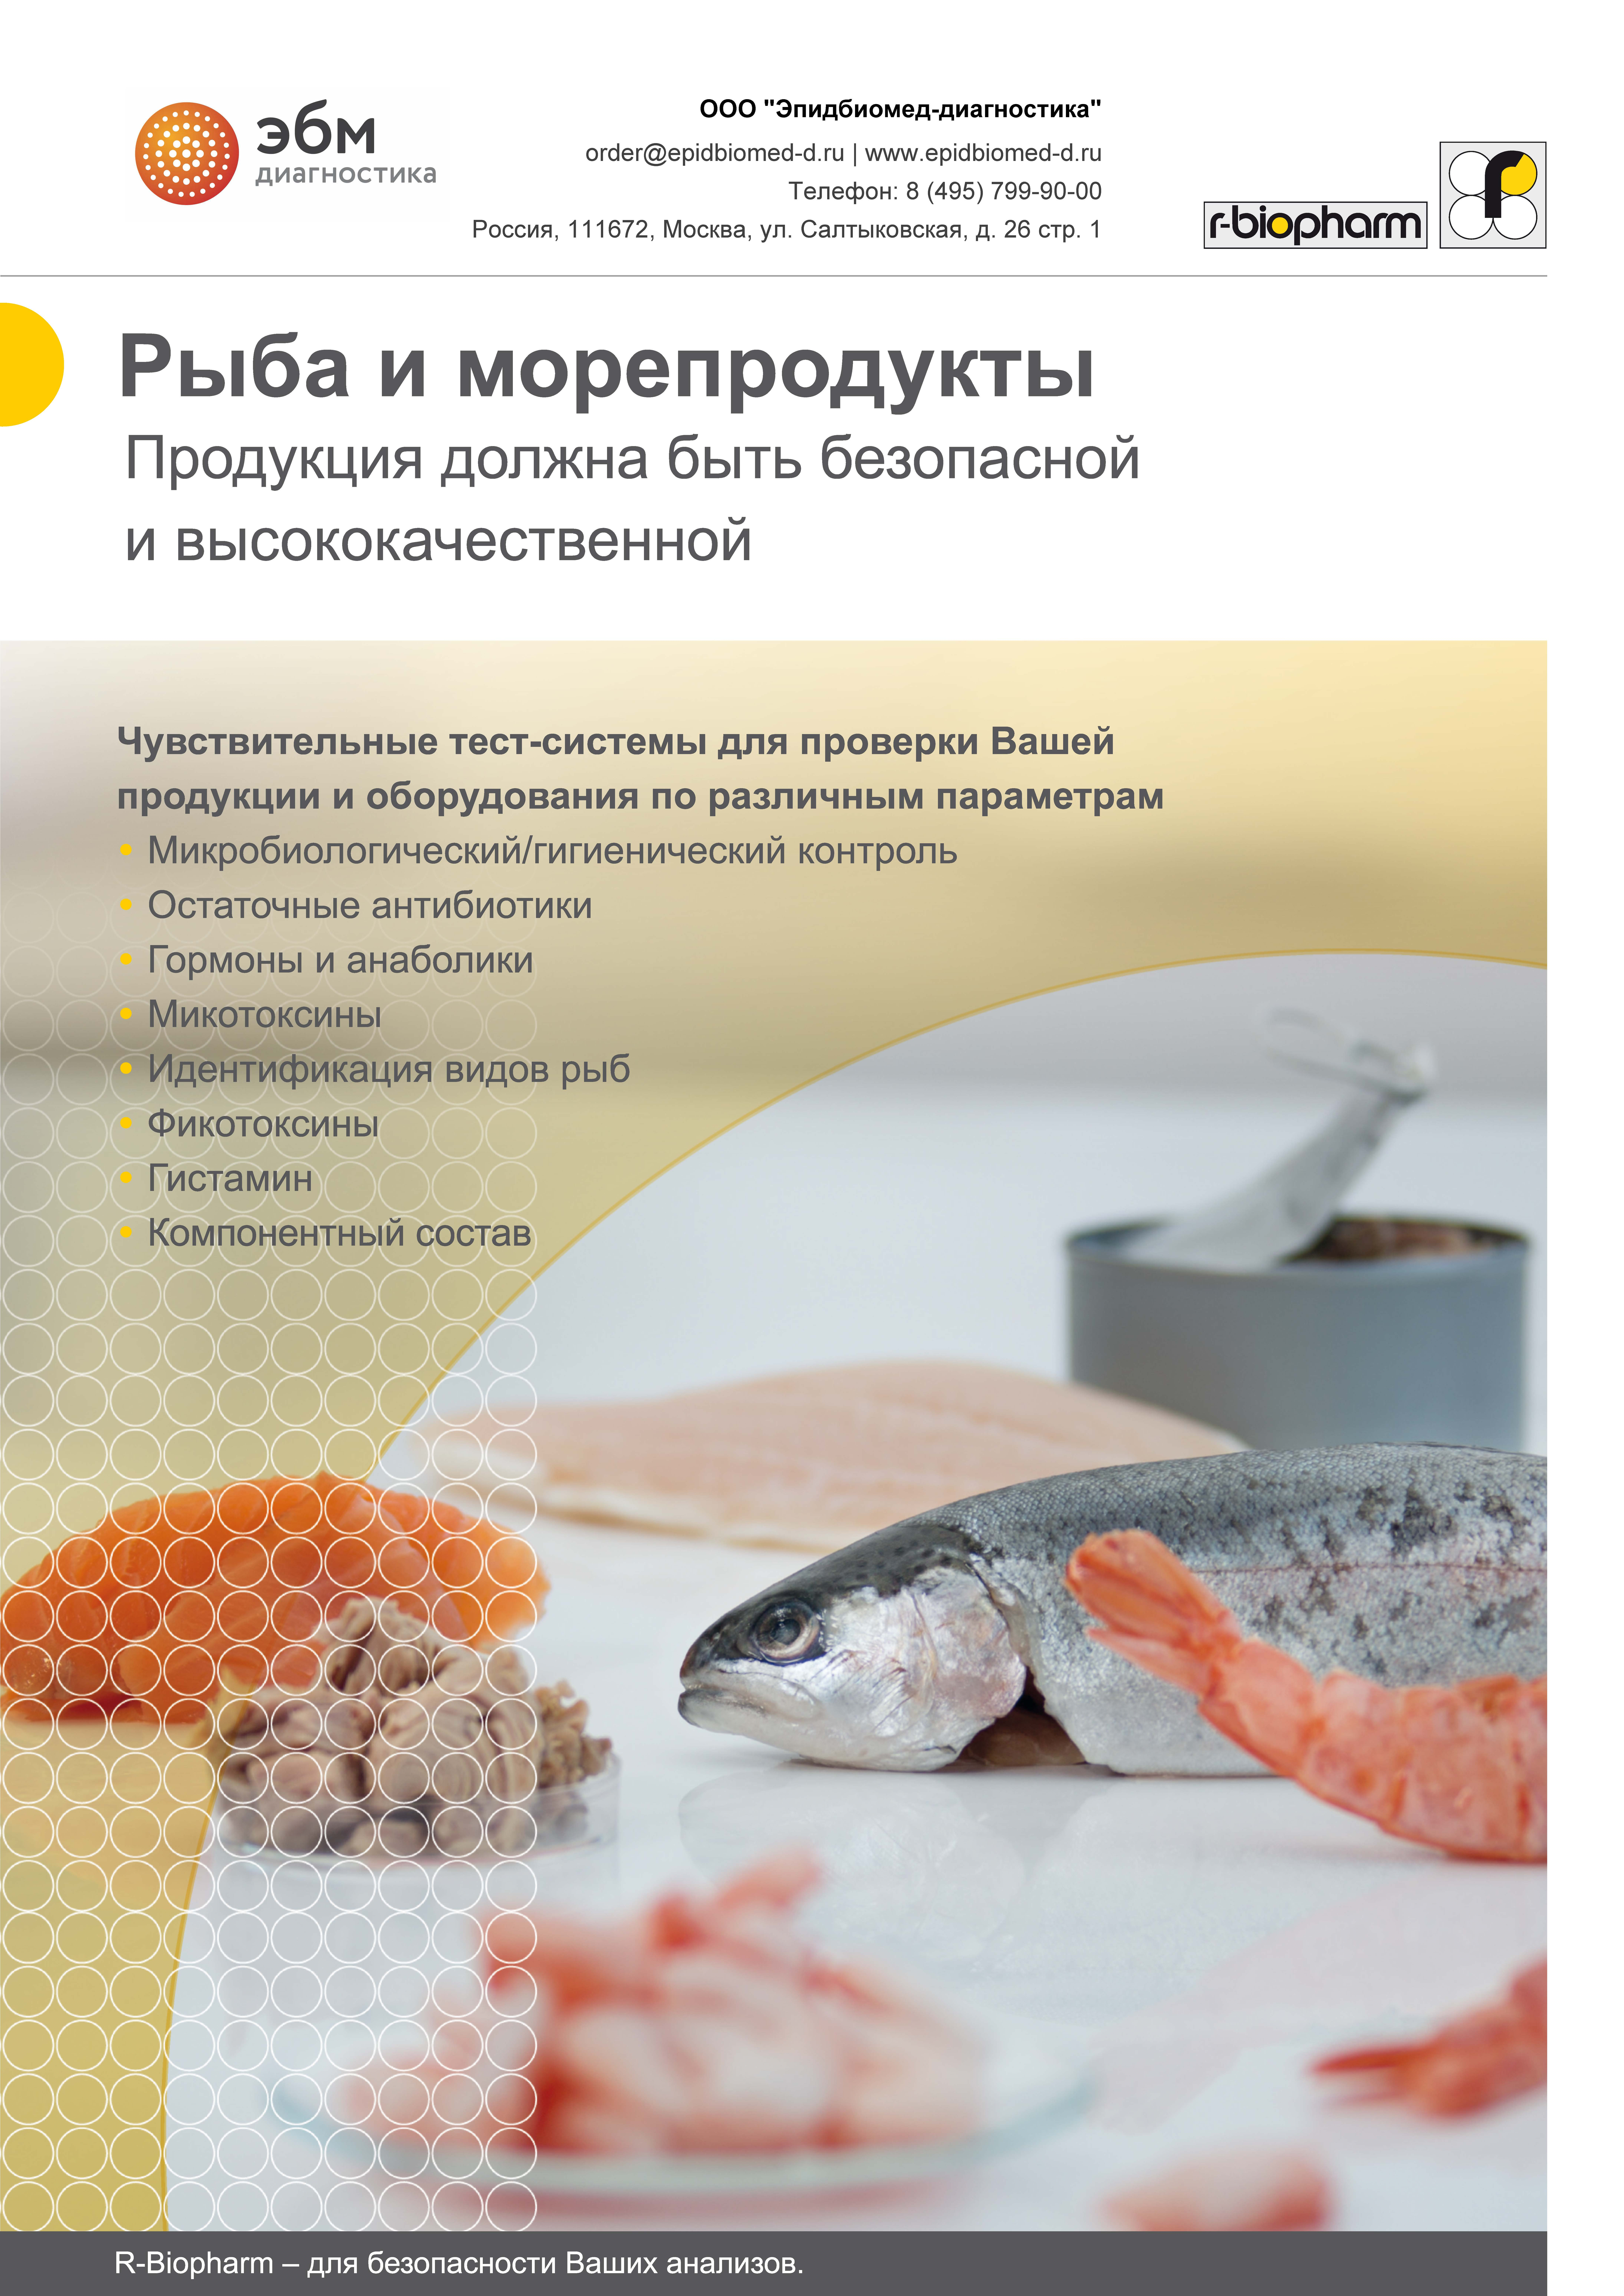 Тест-системы для анализа рыбы и морепродуктов